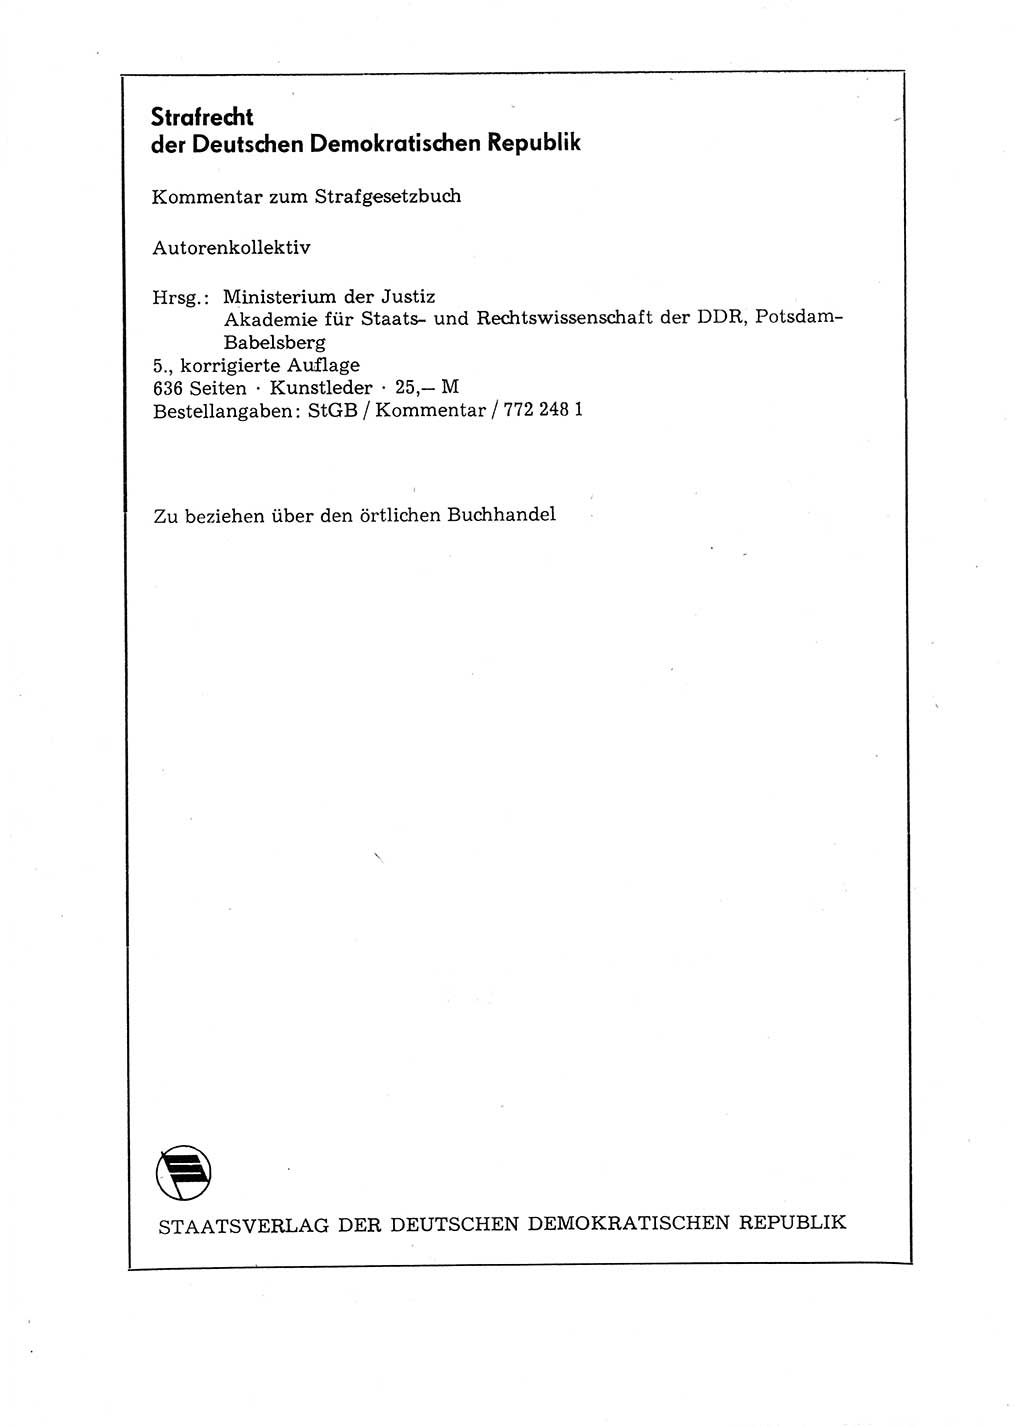 Strafgesetzbuch (StGB) der Deutschen Demokratischen Republik (DDR) 1987, Seite 108 (StGB DDR 1987, S. 108)